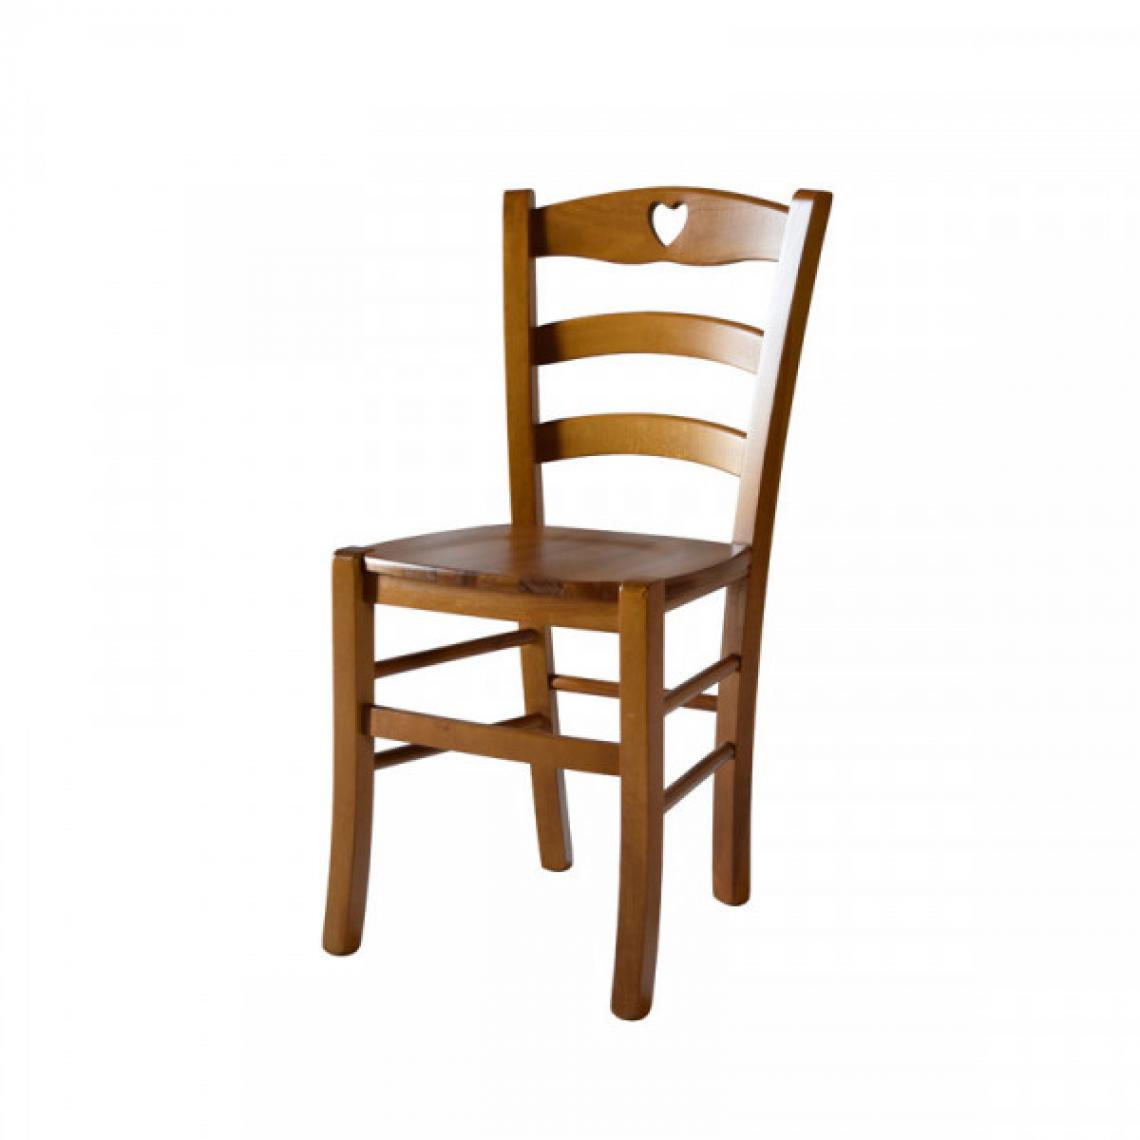 Dansmamaison - Lot de 2 chaises rustiques Chêne n°1 - PISA - L 45.5 x l 42.5 x H 88 cm - Chaises